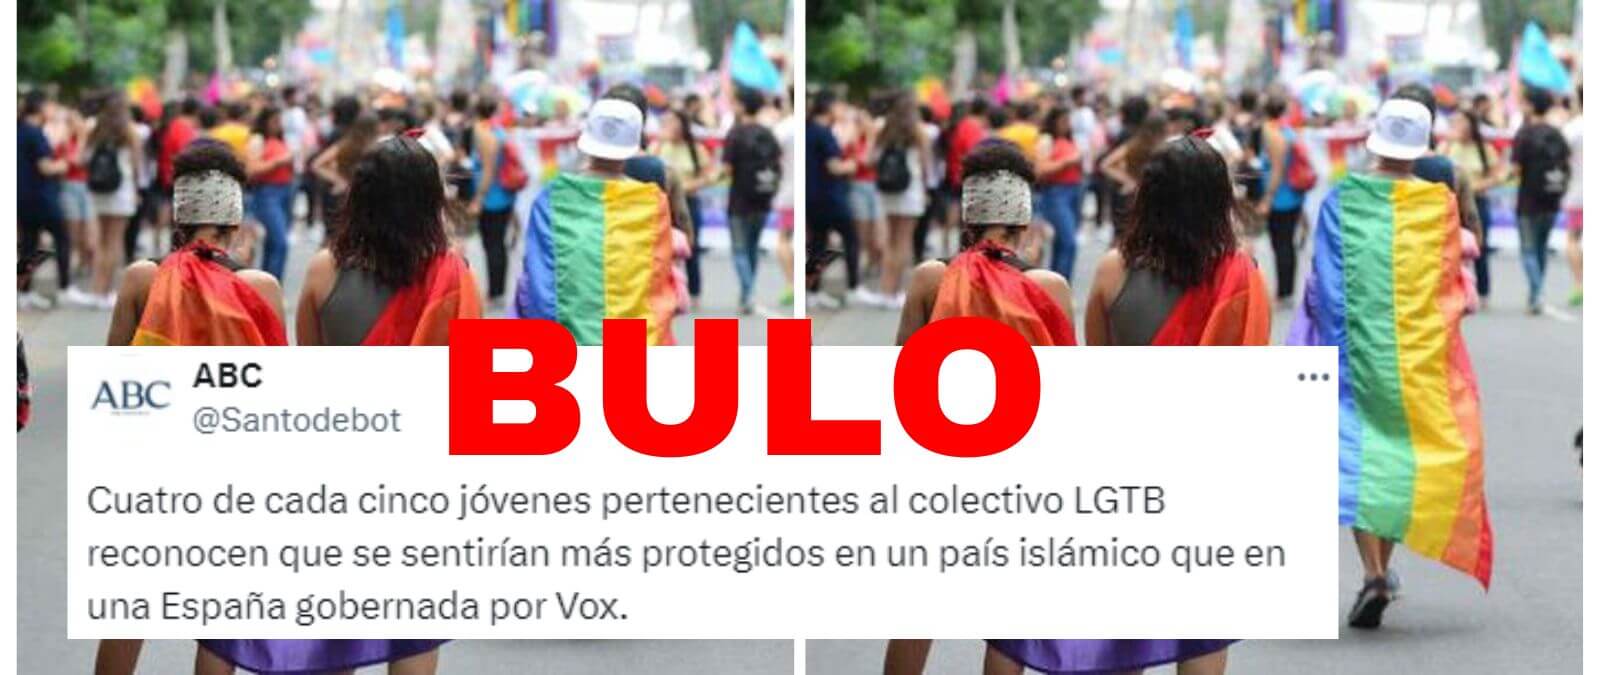 No, ABC no ha tuiteado que “cuatro de cada cinco jóvenes” del colectivo LGTBI “se sentirían más protegidos en un país islámico que en una España gobernada por Vox”